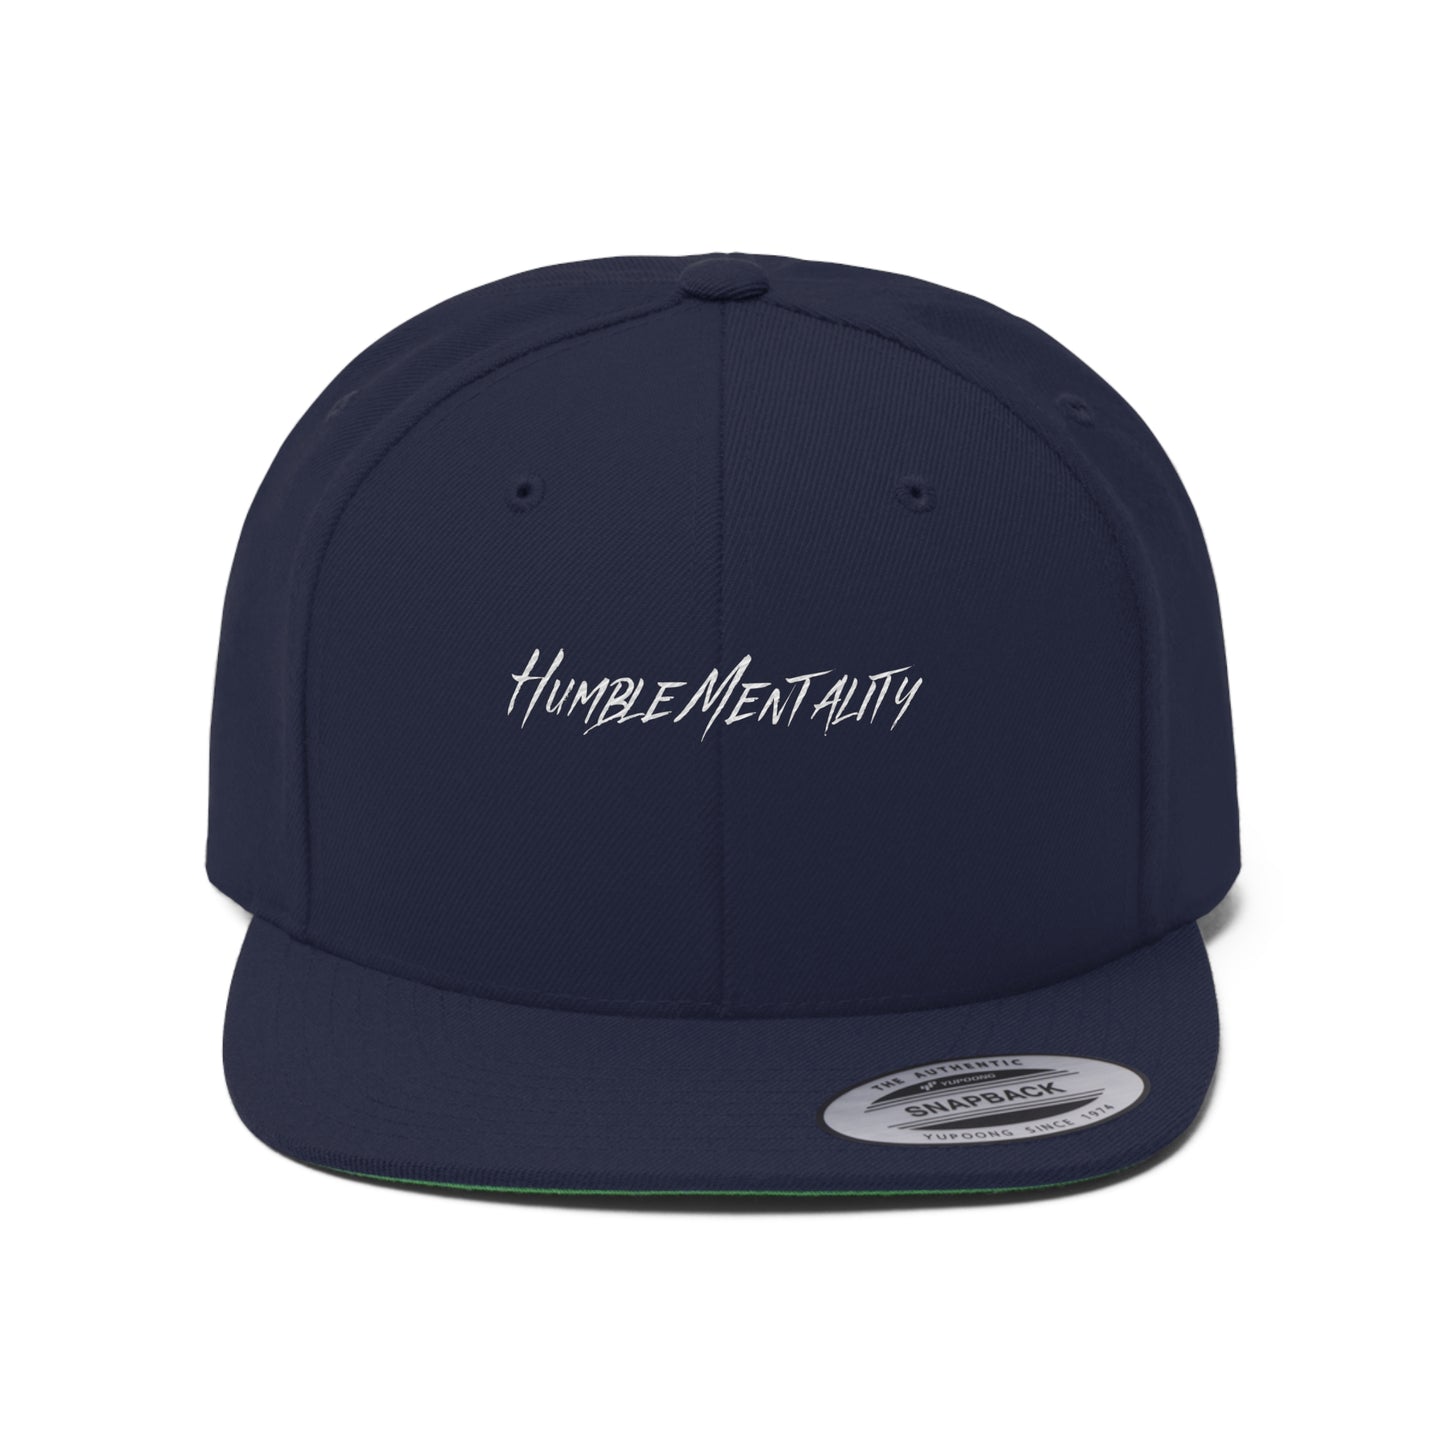 Humble Mentality Unisex Snapback Hat